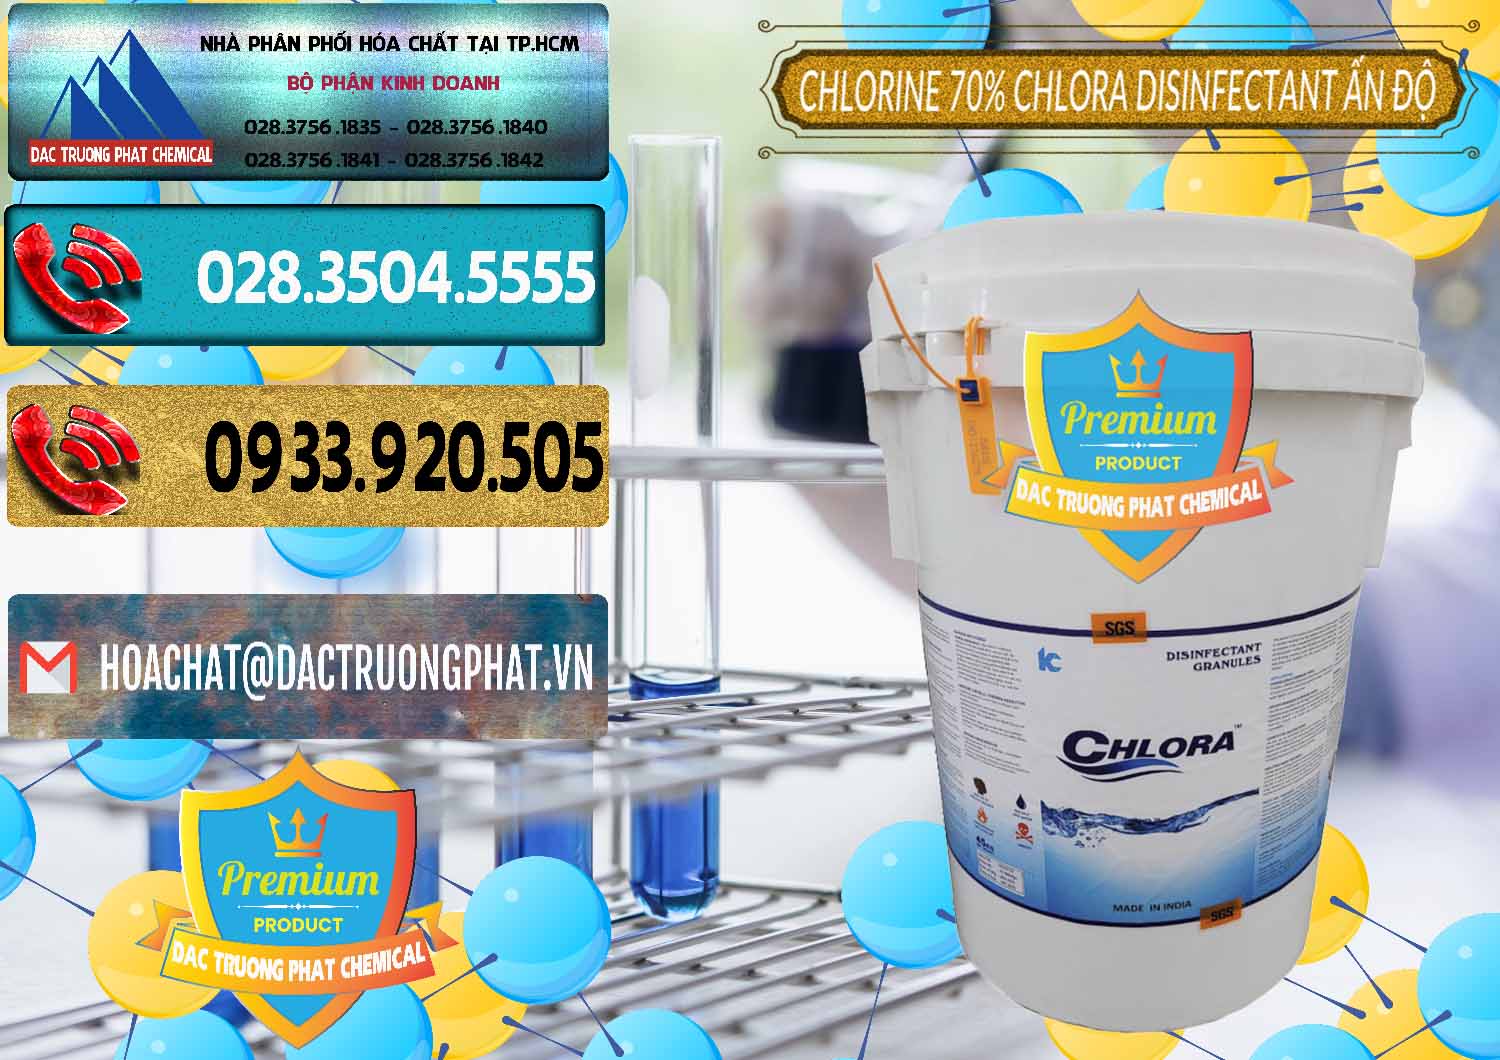 Nơi bán ( cung cấp ) Chlorine – Clorin 70% Chlora Disinfectant Ấn Độ India - 0213 - Đơn vị cung cấp & nhập khẩu hóa chất tại TP.HCM - hoachatdetnhuom.com